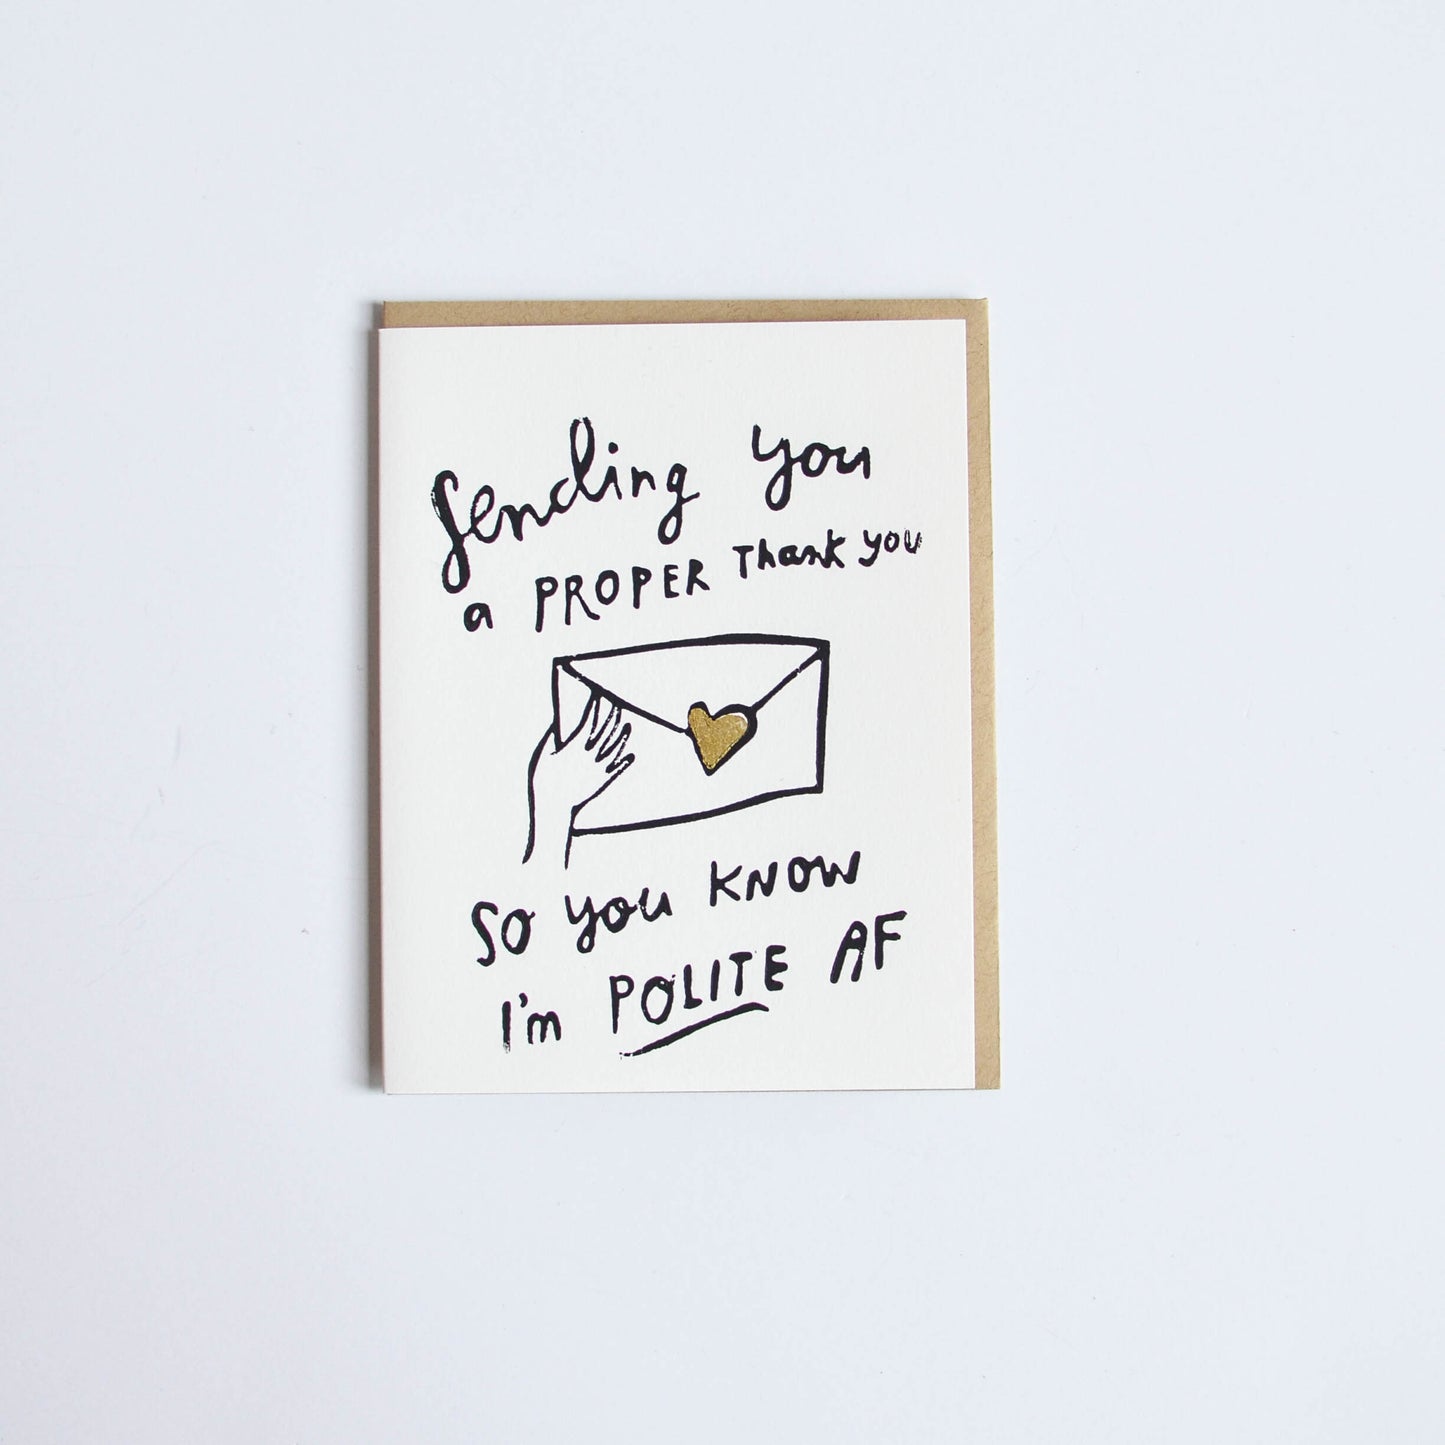 'Sending you a Proper Thank you so you know I am polite AF' Card